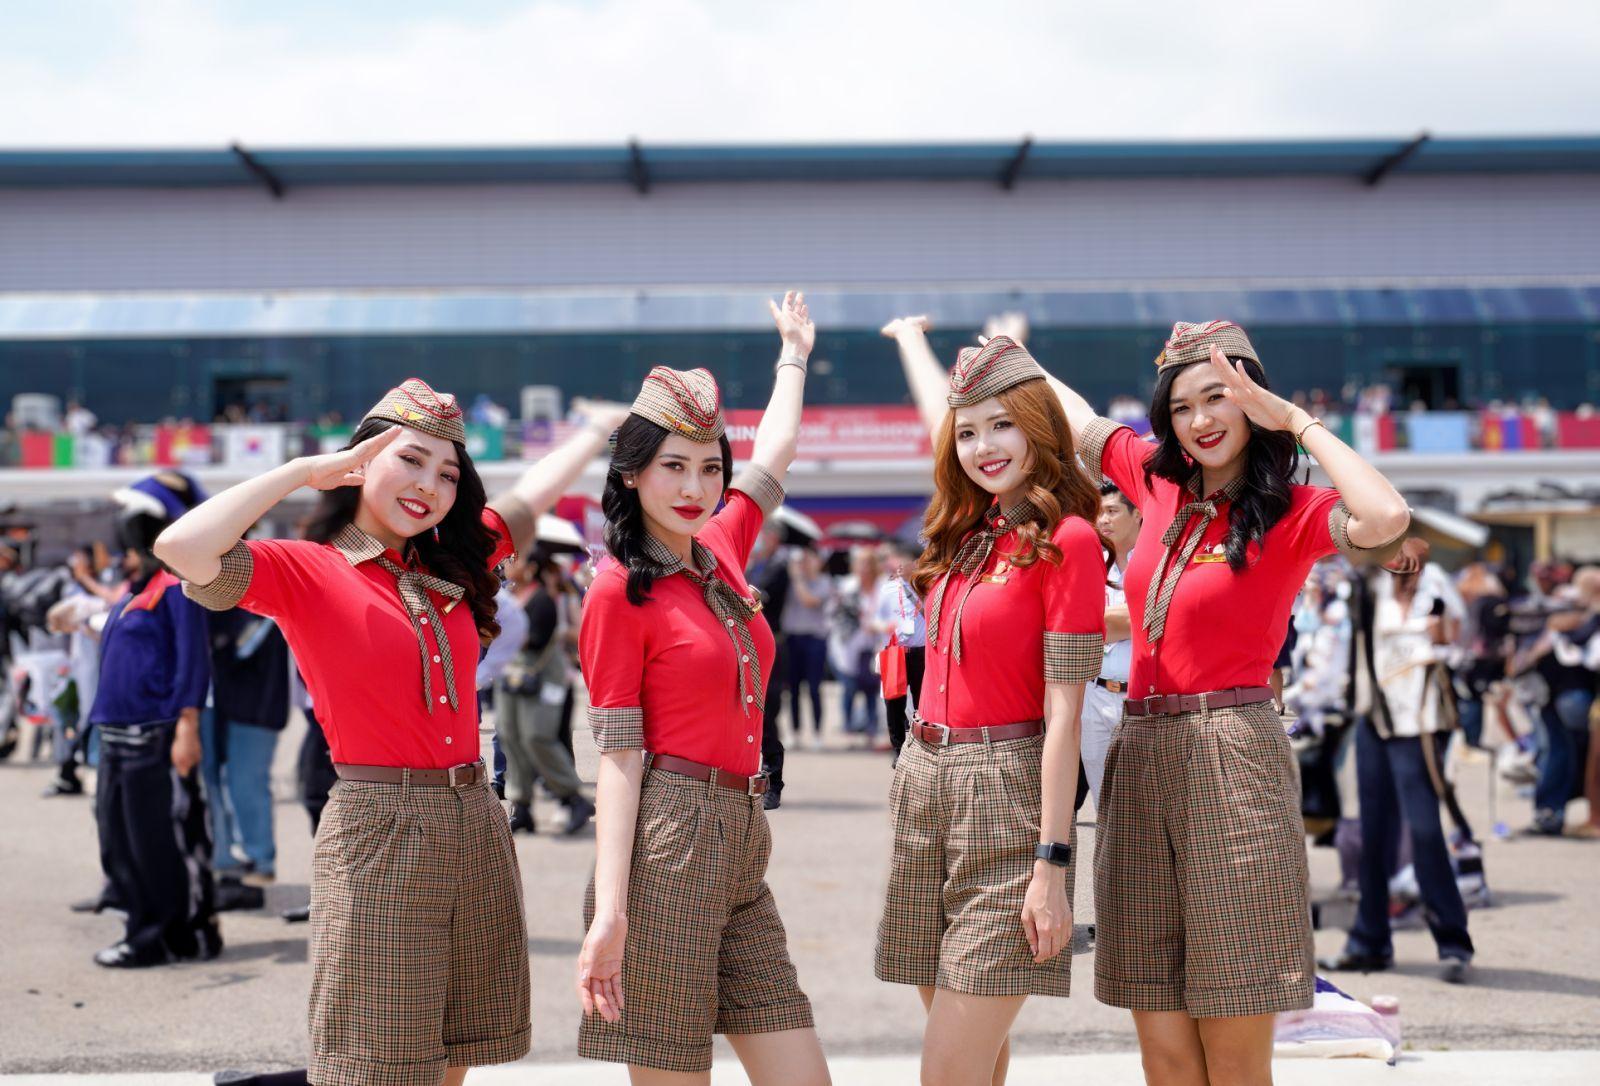 Tiếp viên hàng không Vietjet xuất hiện nổi bật tại Triển lãm hàng không lớn bậc nhất châu Á - Ảnh 6.